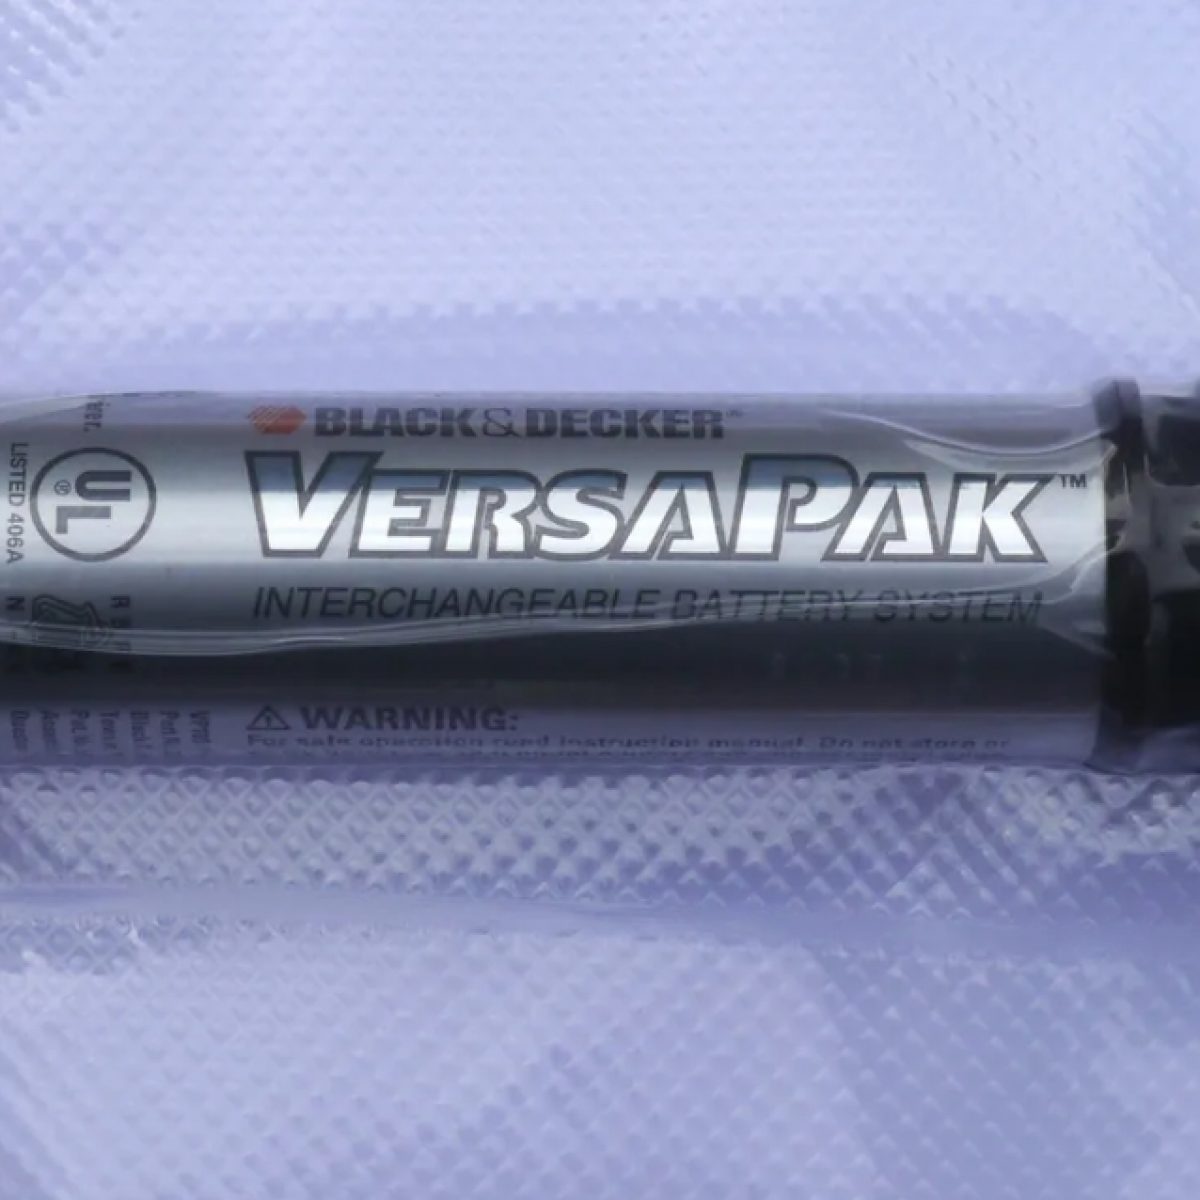 3.6V Rechargeable Battery for Black & Decker VersaPak VP100 VP110 VP130  VP143 US